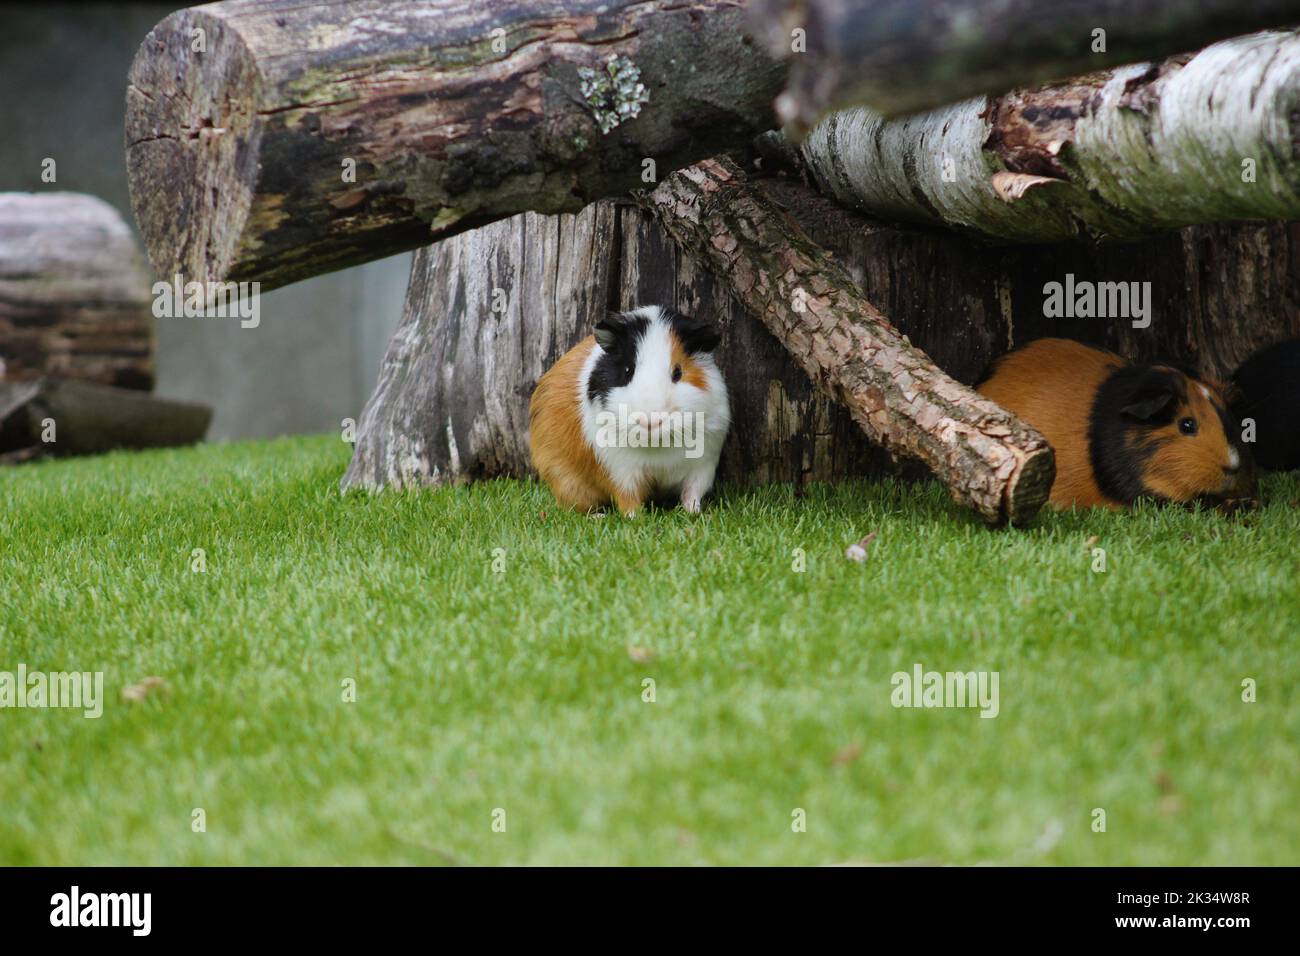 Meerschweinchen im Freigehege sitzen versteckt unter Baumstämmen im grünen Gras Stock Photo